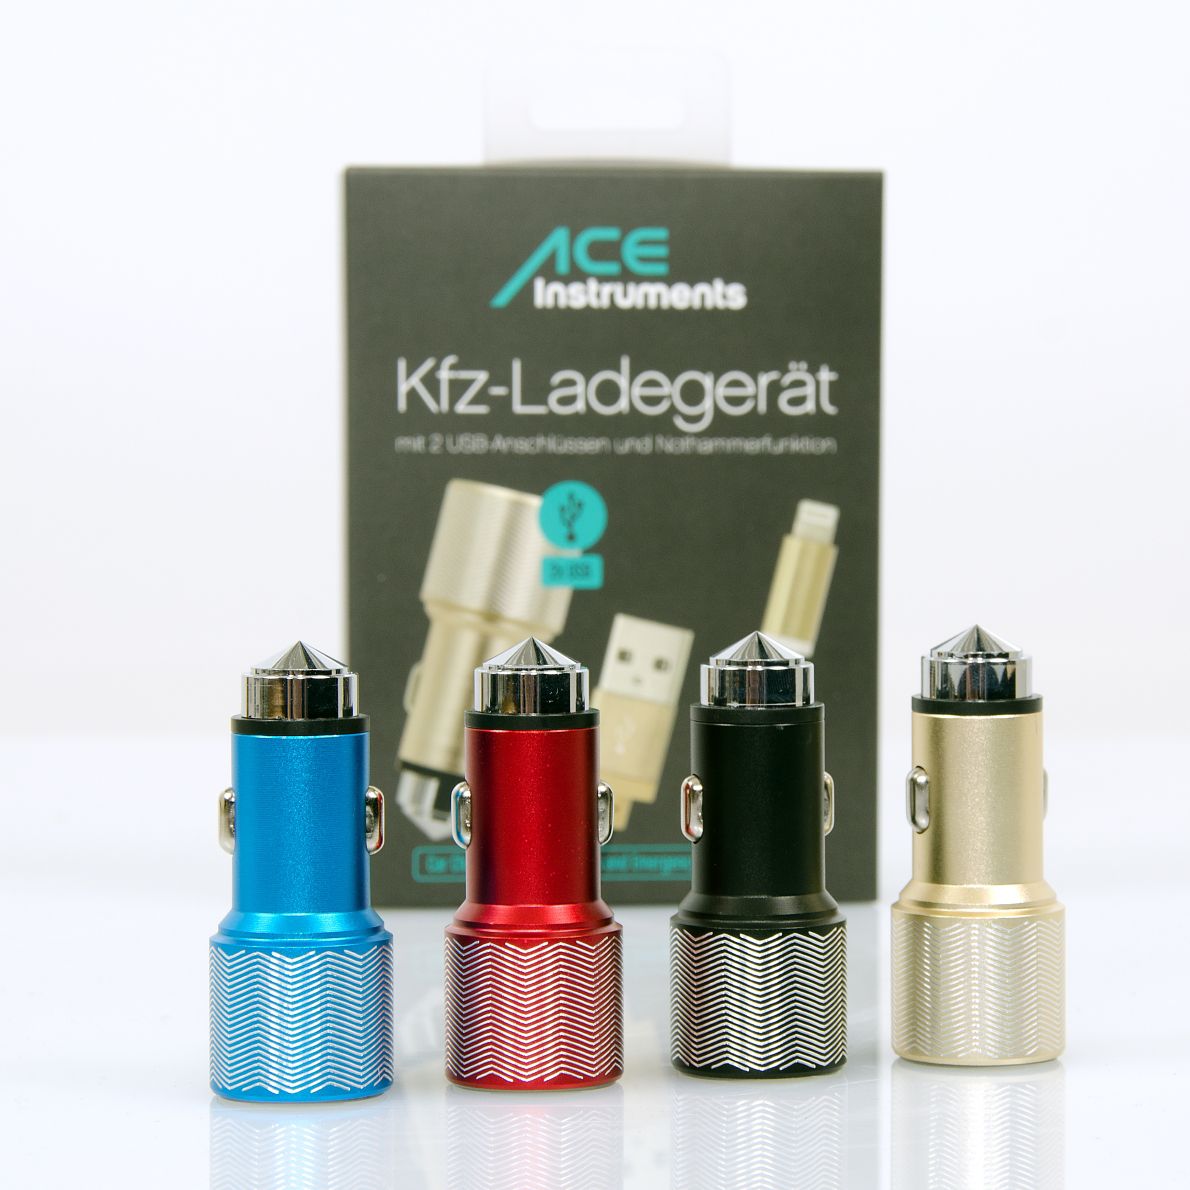 ACE Kfz-Ladegerät mit 2 USB-Anschlüssen und Nothammerfunktion (verschiedene Farben)